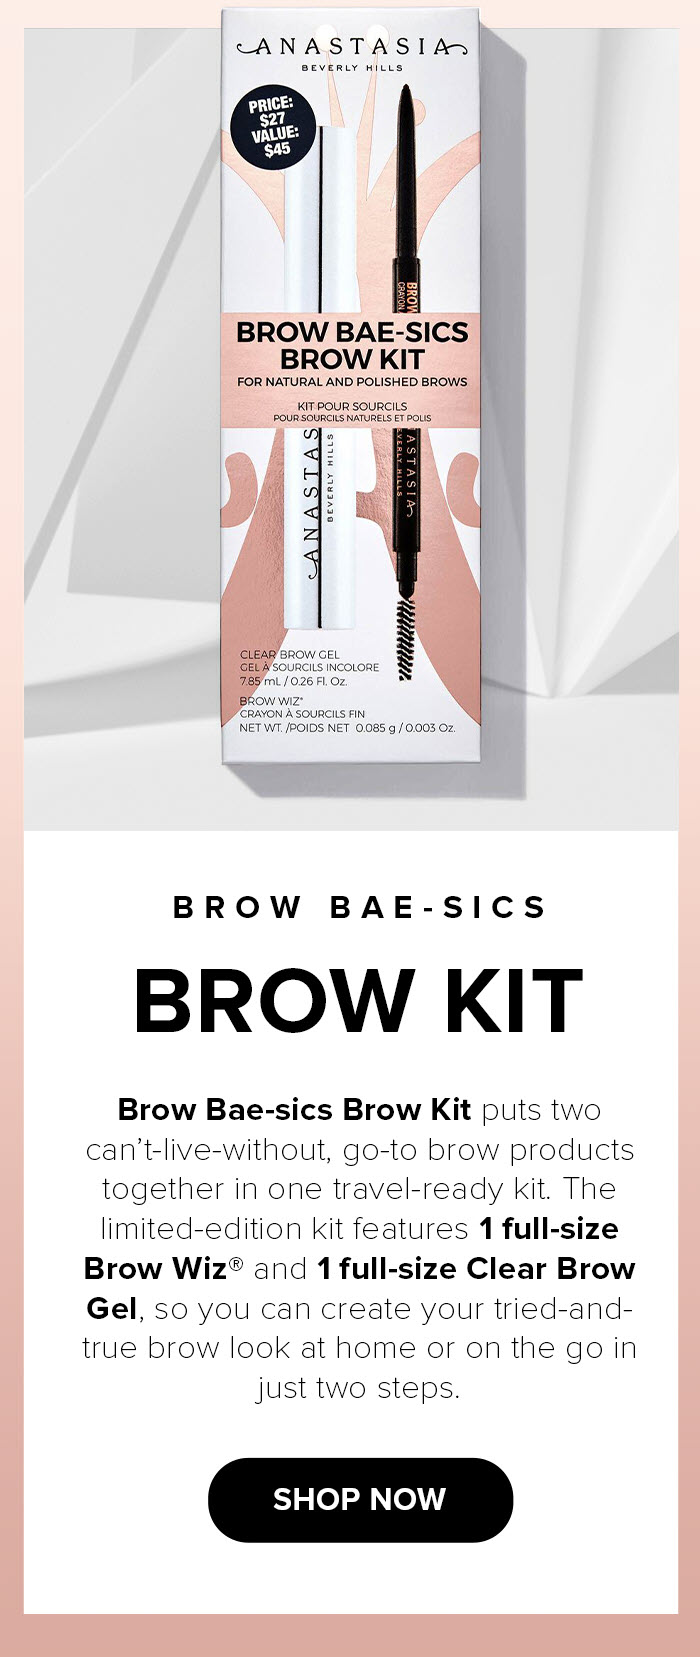 Brow Bae-sics Brow Kit - Shop Now